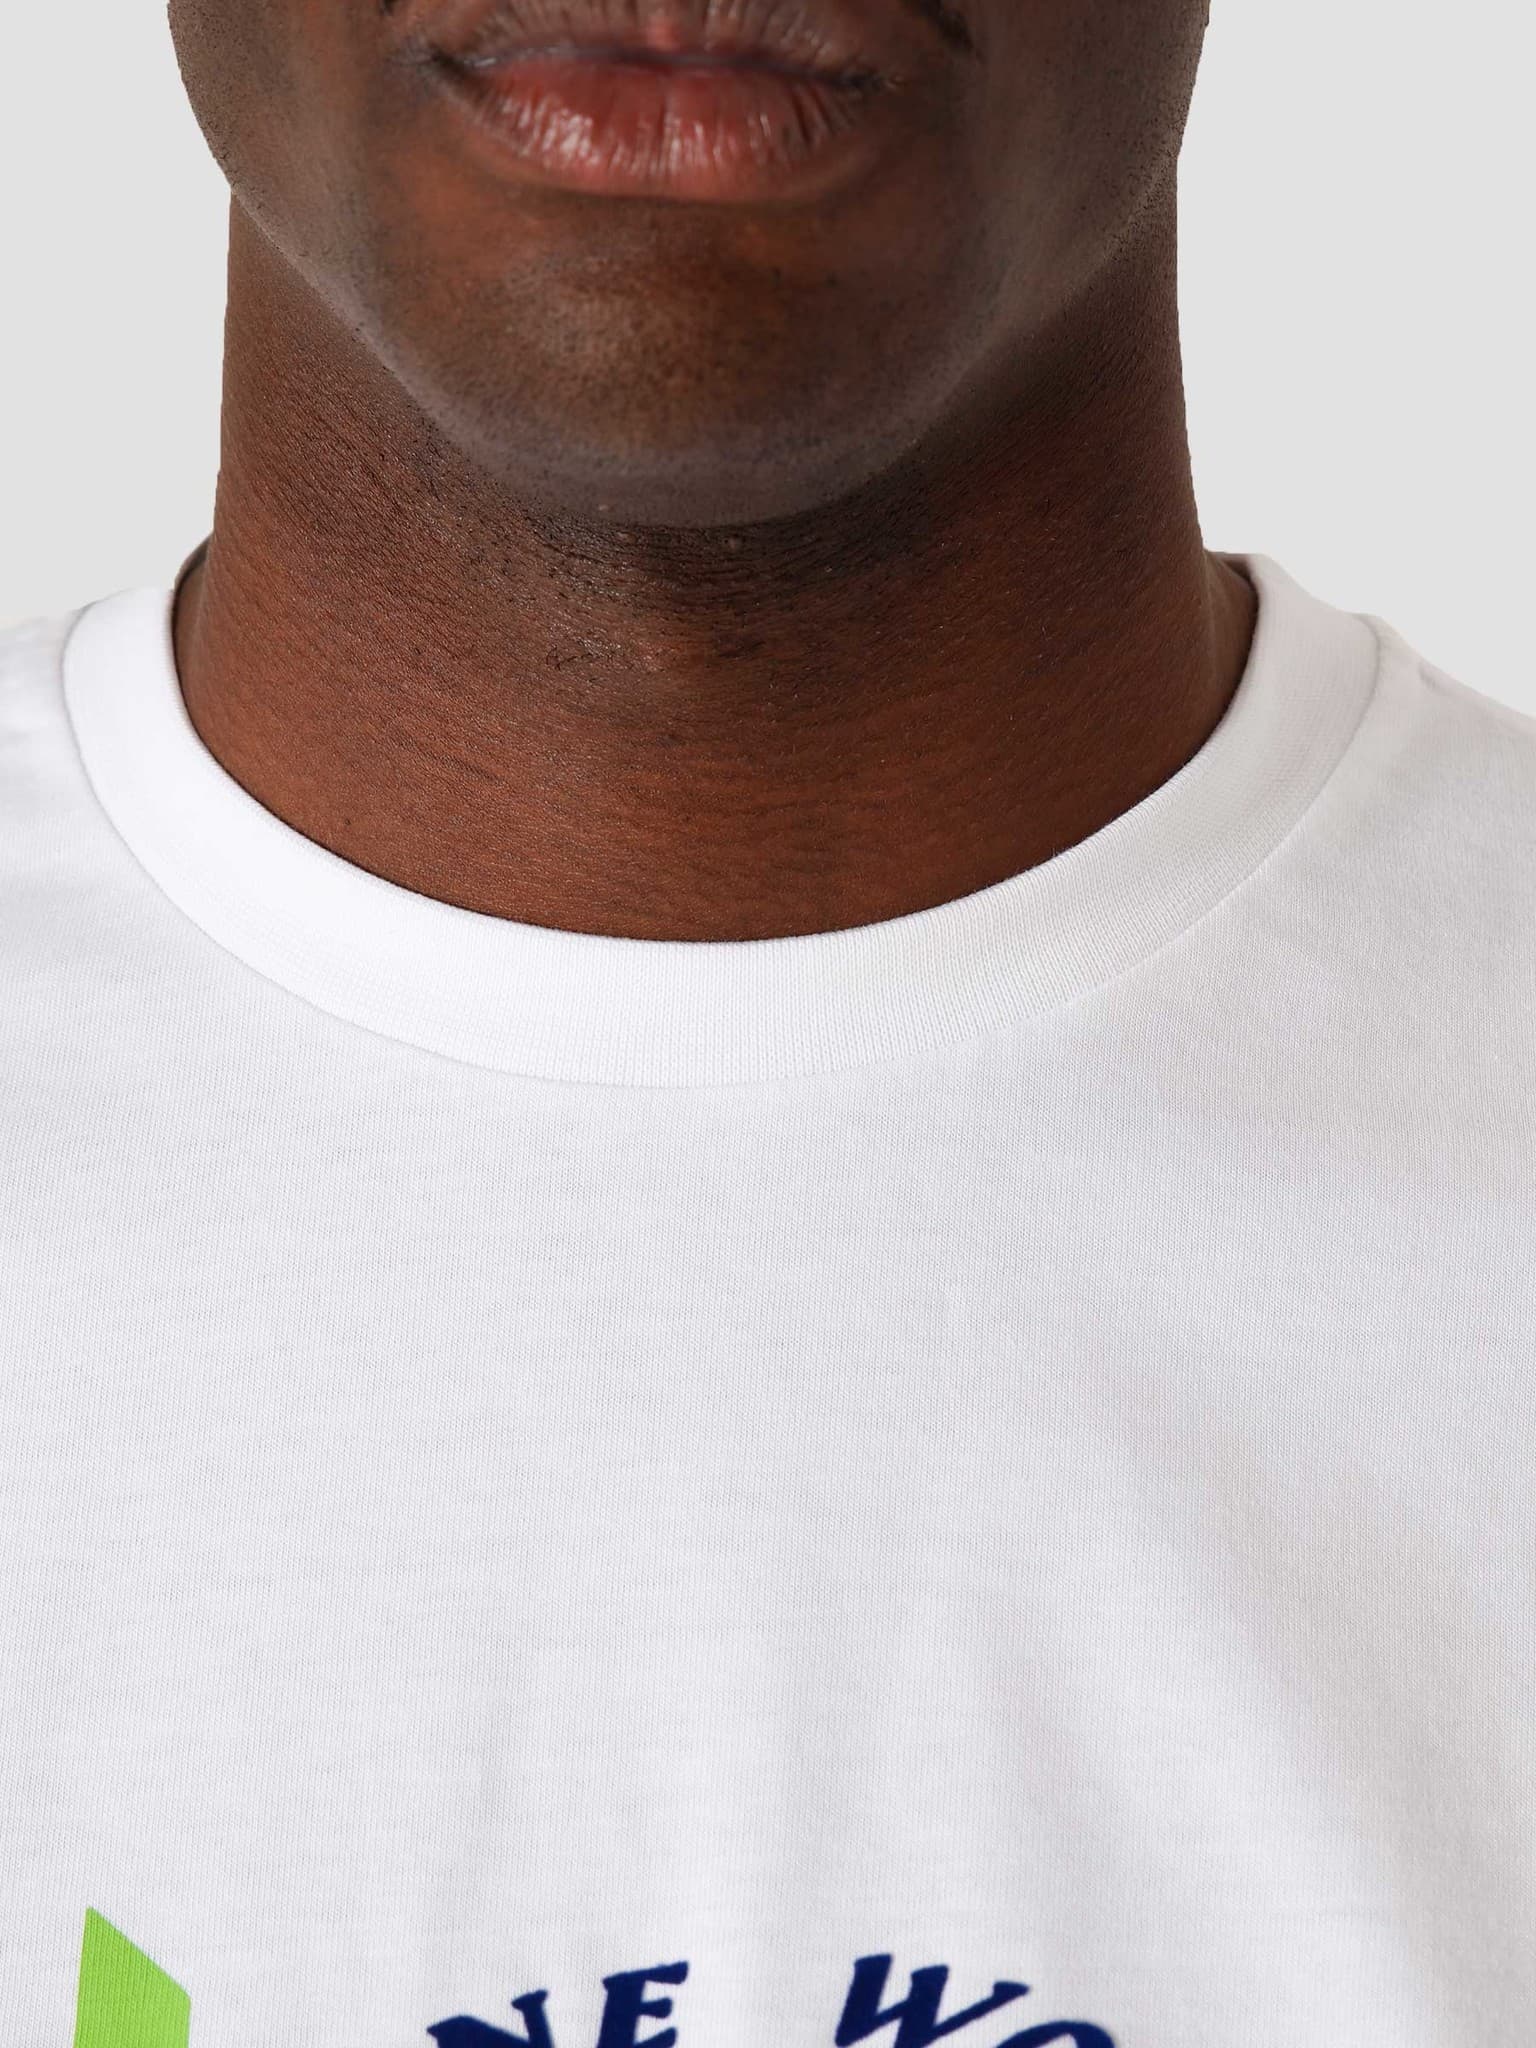 Kimwhi Fitted T-Shirt White 2111132